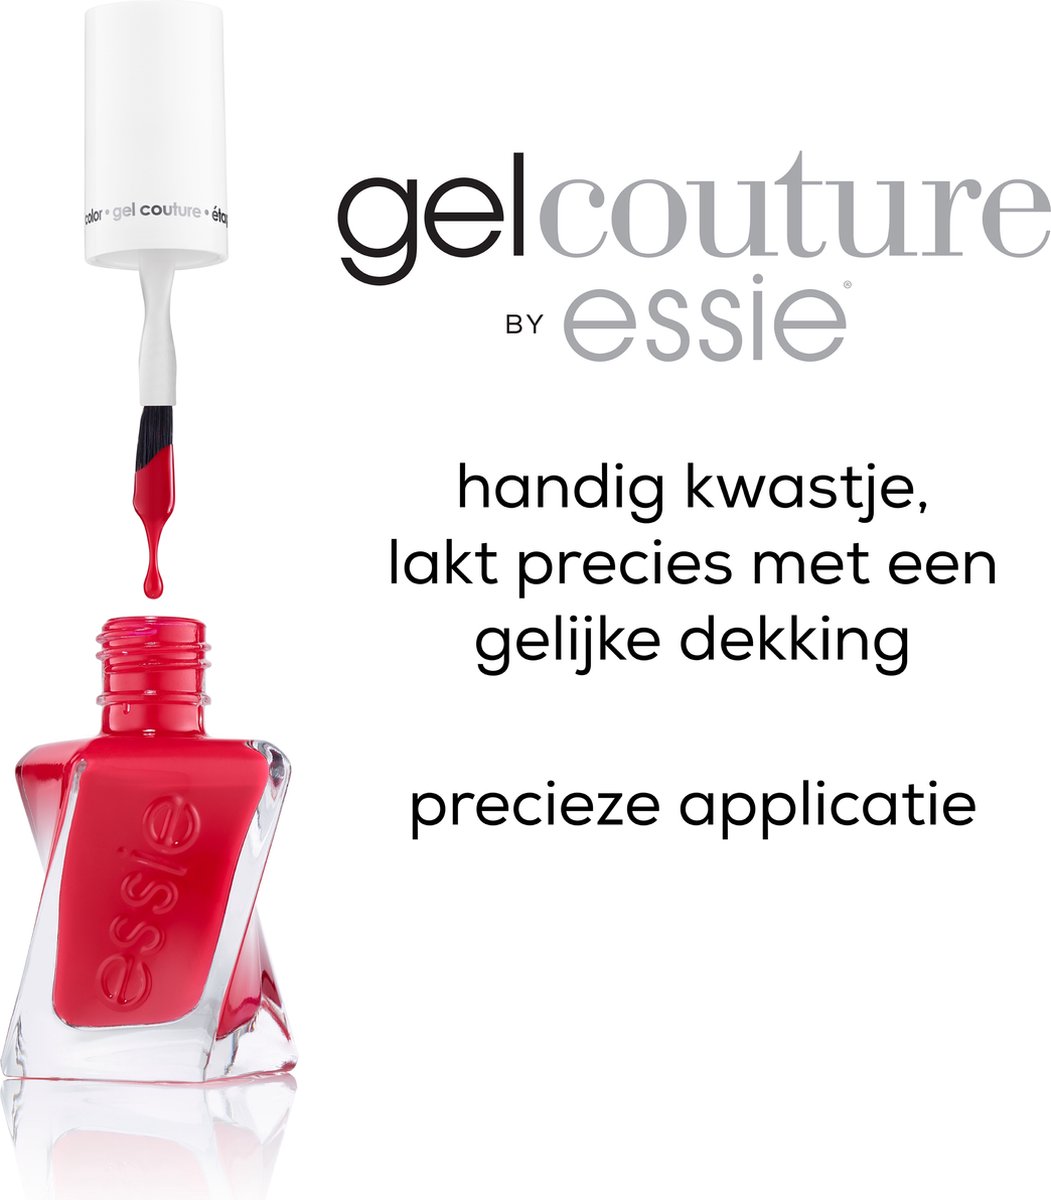 essie - gel couture™ - 50 stitch by stitch - roze - langhoudende nagellak -  13,5 ml | bol